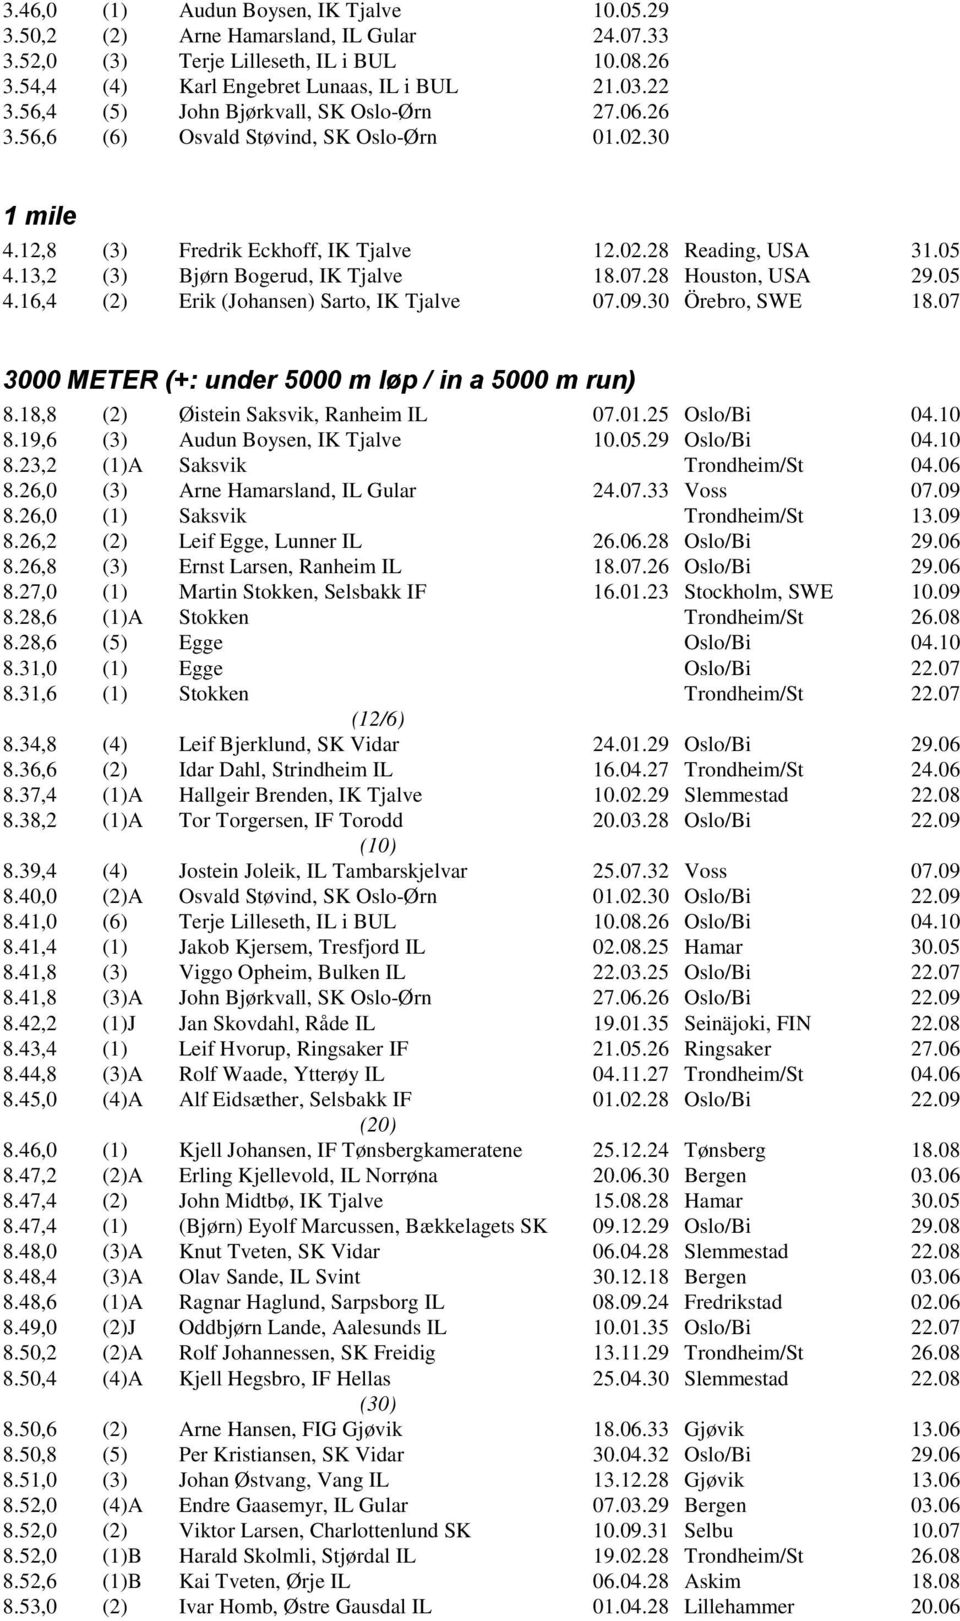 13,2 (3) Bjørn Bogerud, IK Tjalve 18.07.28 Houston, USA 29.05 4.16,4 (2) Erik (Johansen) Sarto, IK Tjalve 07.09.30 Örebro, SWE 18.07 3000 METER (+: under 5000 m løp / in a 5000 m run) 8.